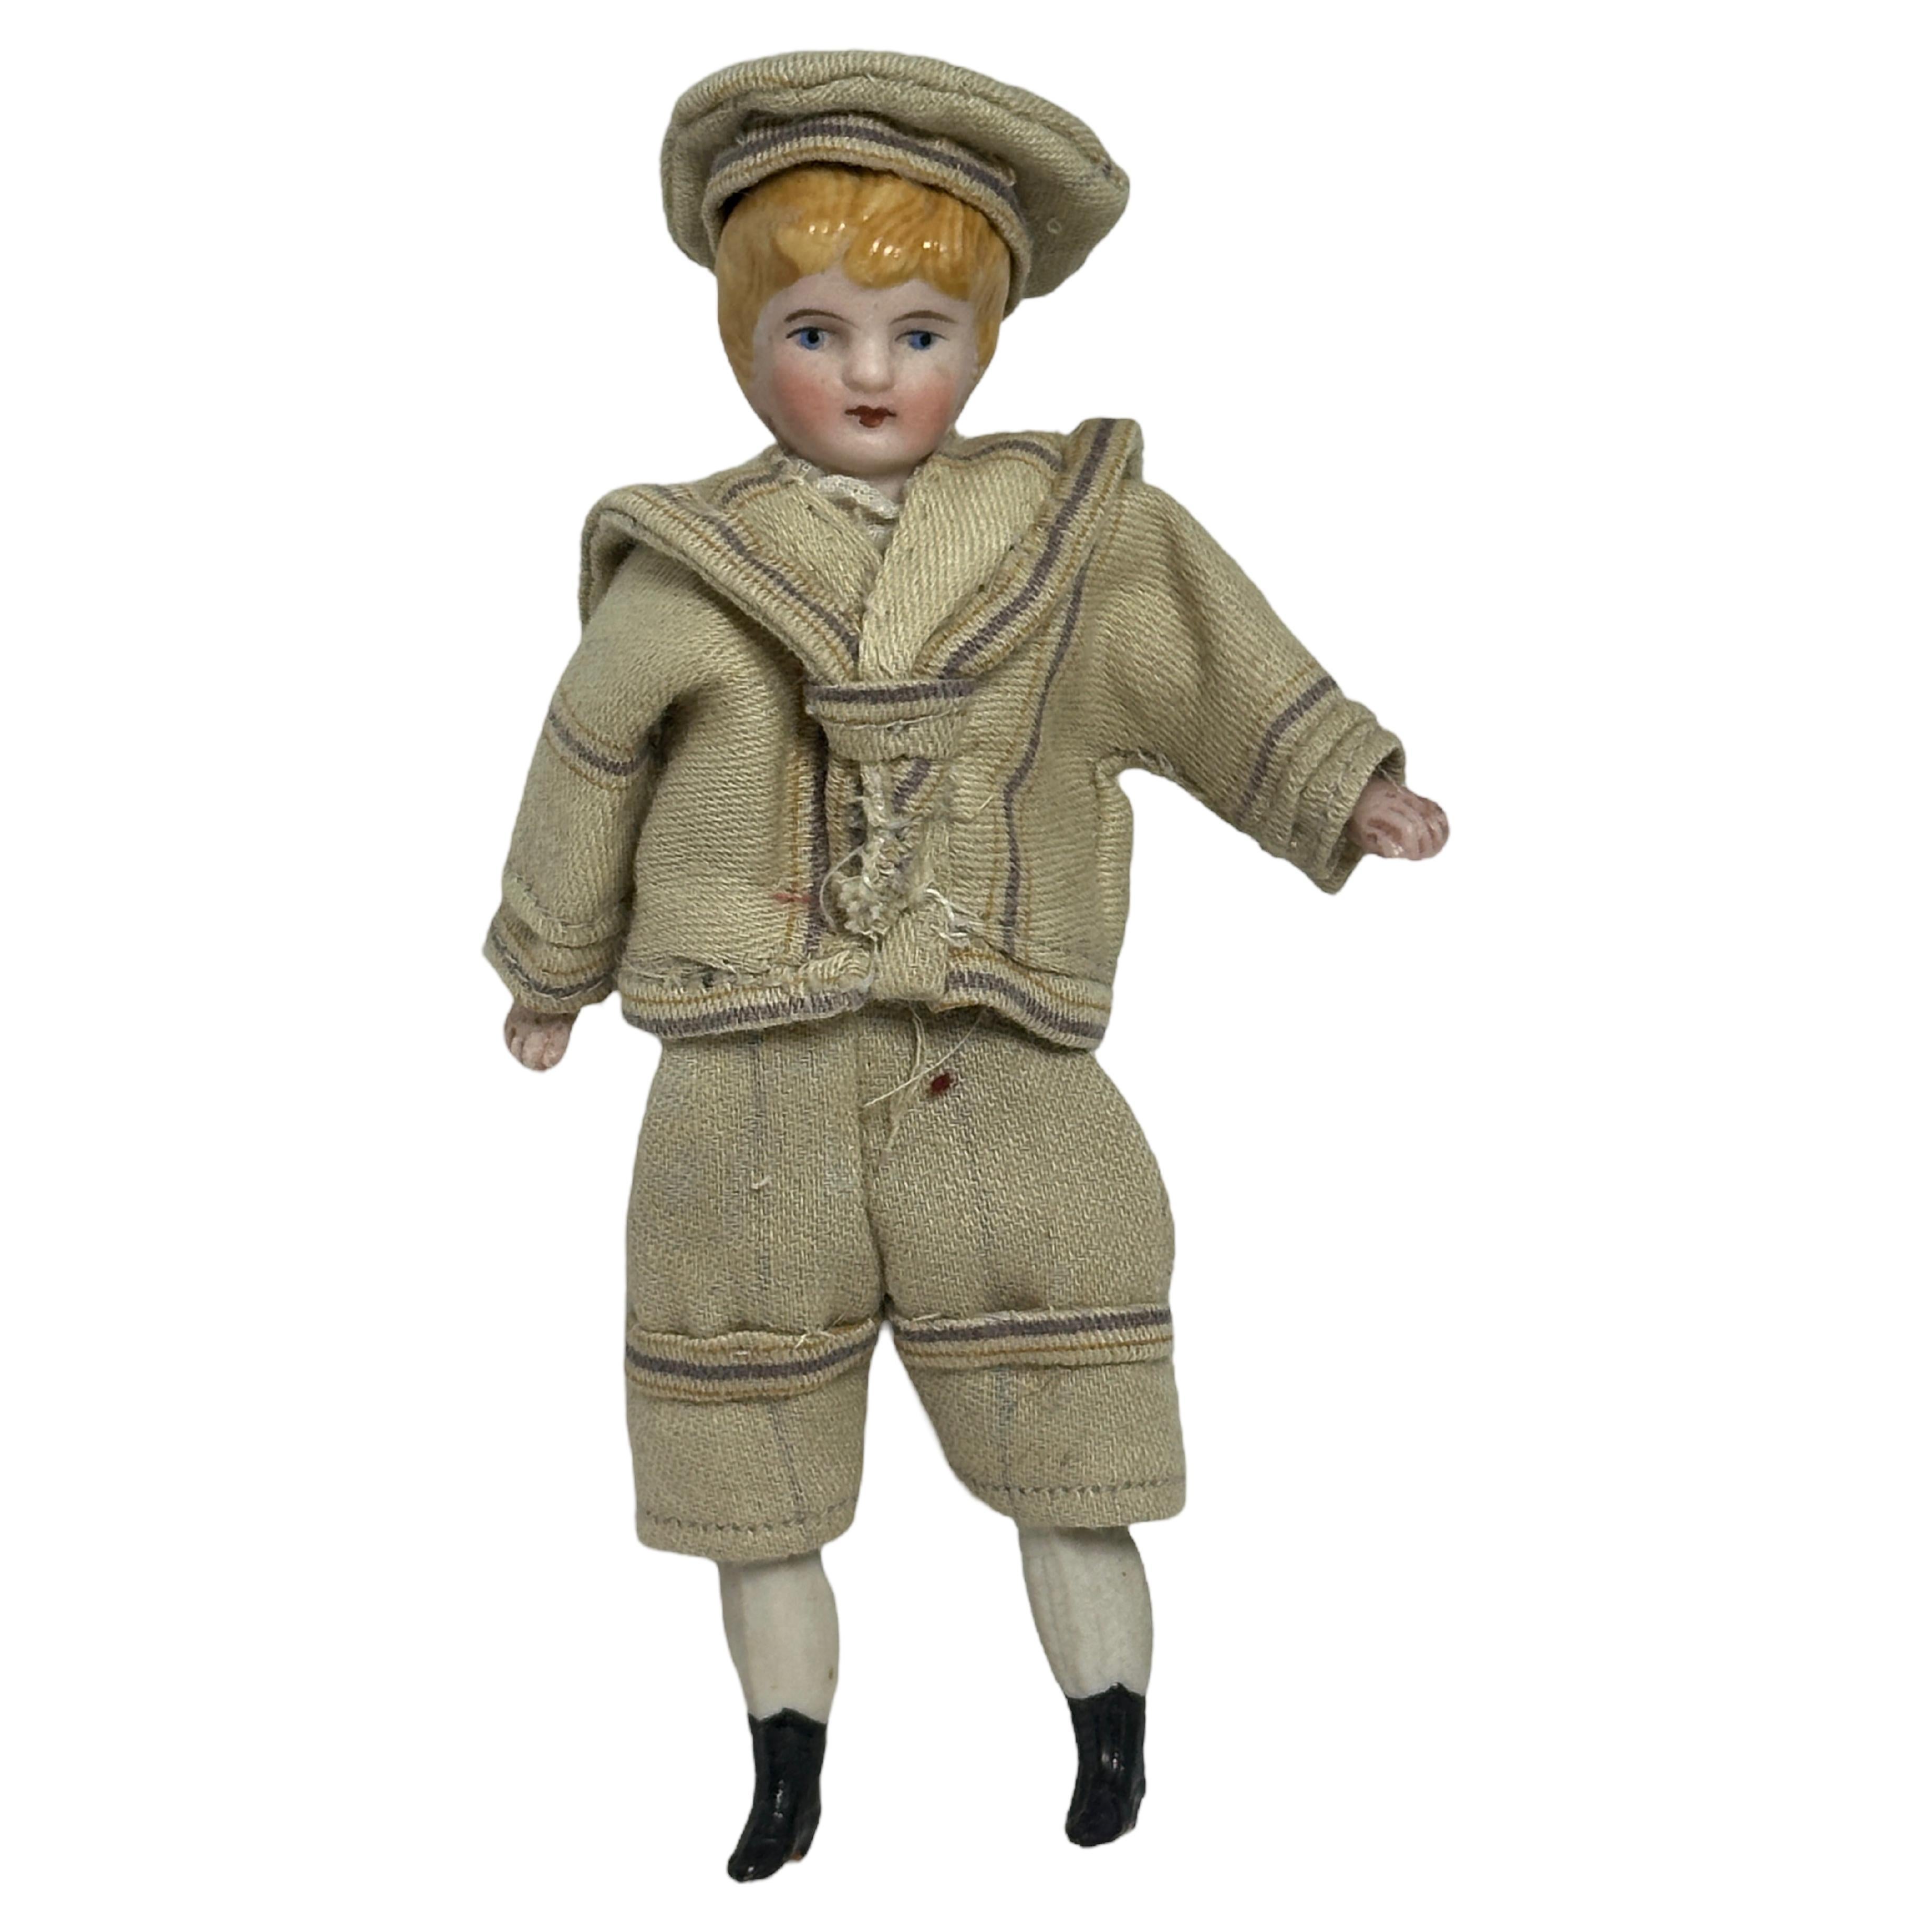 Garçon vêtu d'un costume de marin Antique German Dollhouse Doll Toy 1900s